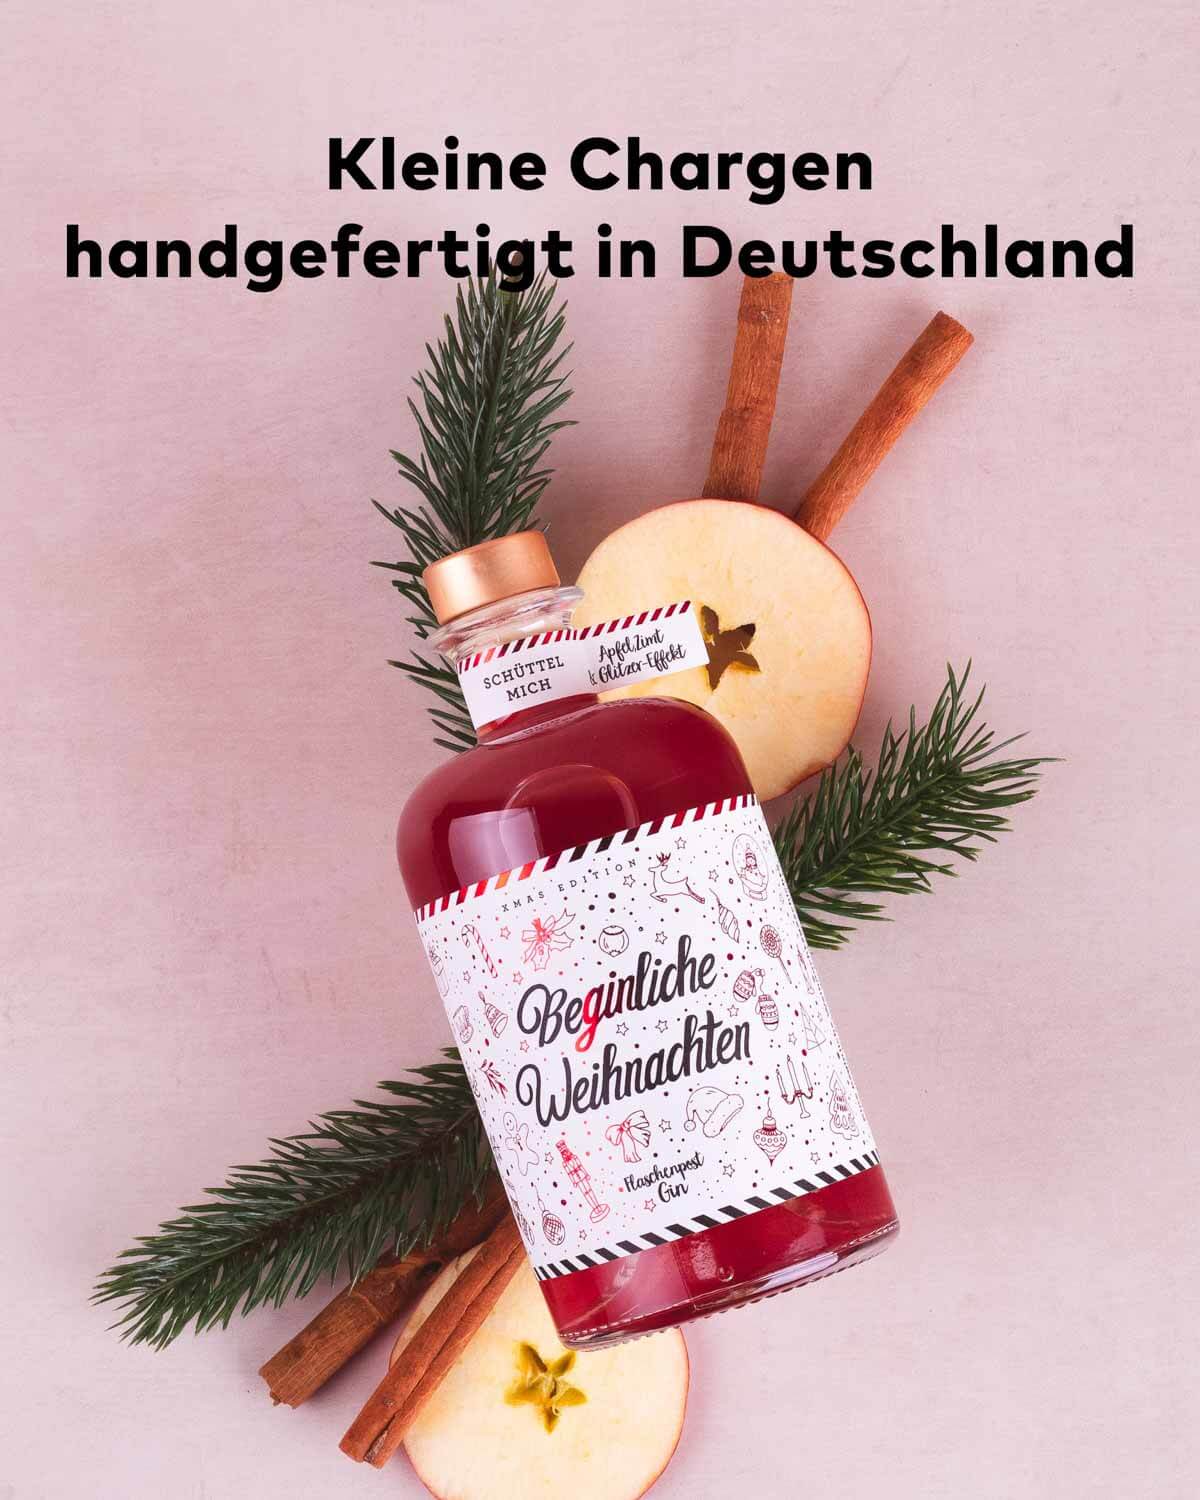 Die Beginliche Weihnachten Limited Edition liegt auf einem weihnachtlichen Bouquet. Sie wird in kleinen Chargen von Hand in Deutschland gefertigt. 